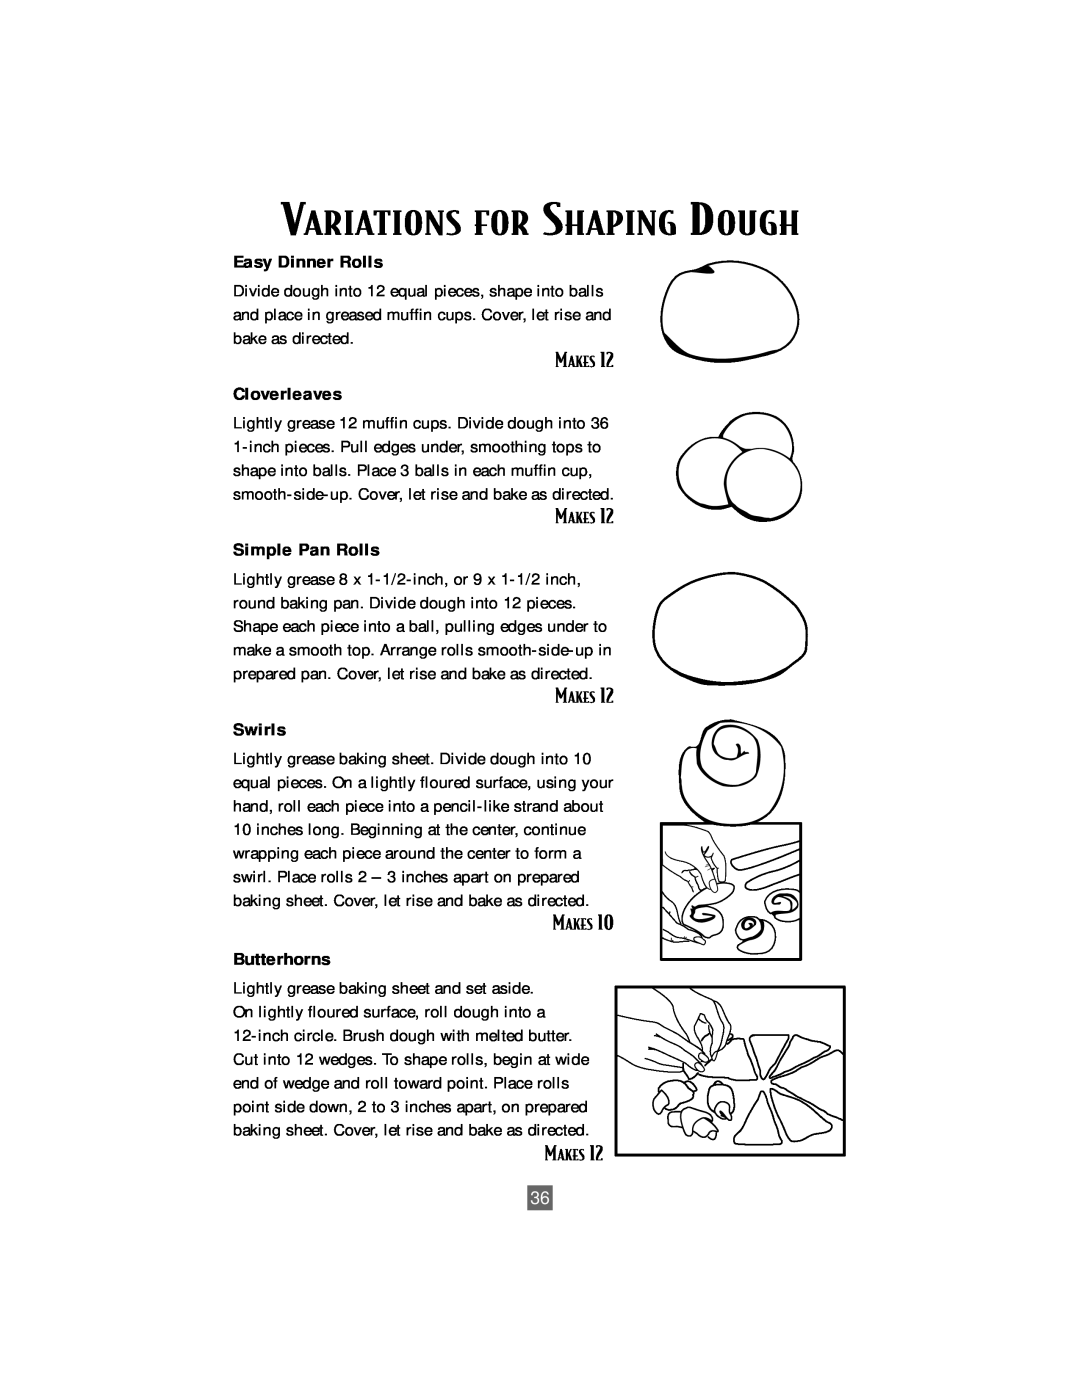 Sunbeam Bread/Dough Maker manual Variations For Shaping Dough, Easy Dinner Rolls, Cloverleaves, Simple Pan Rolls, Swirls 